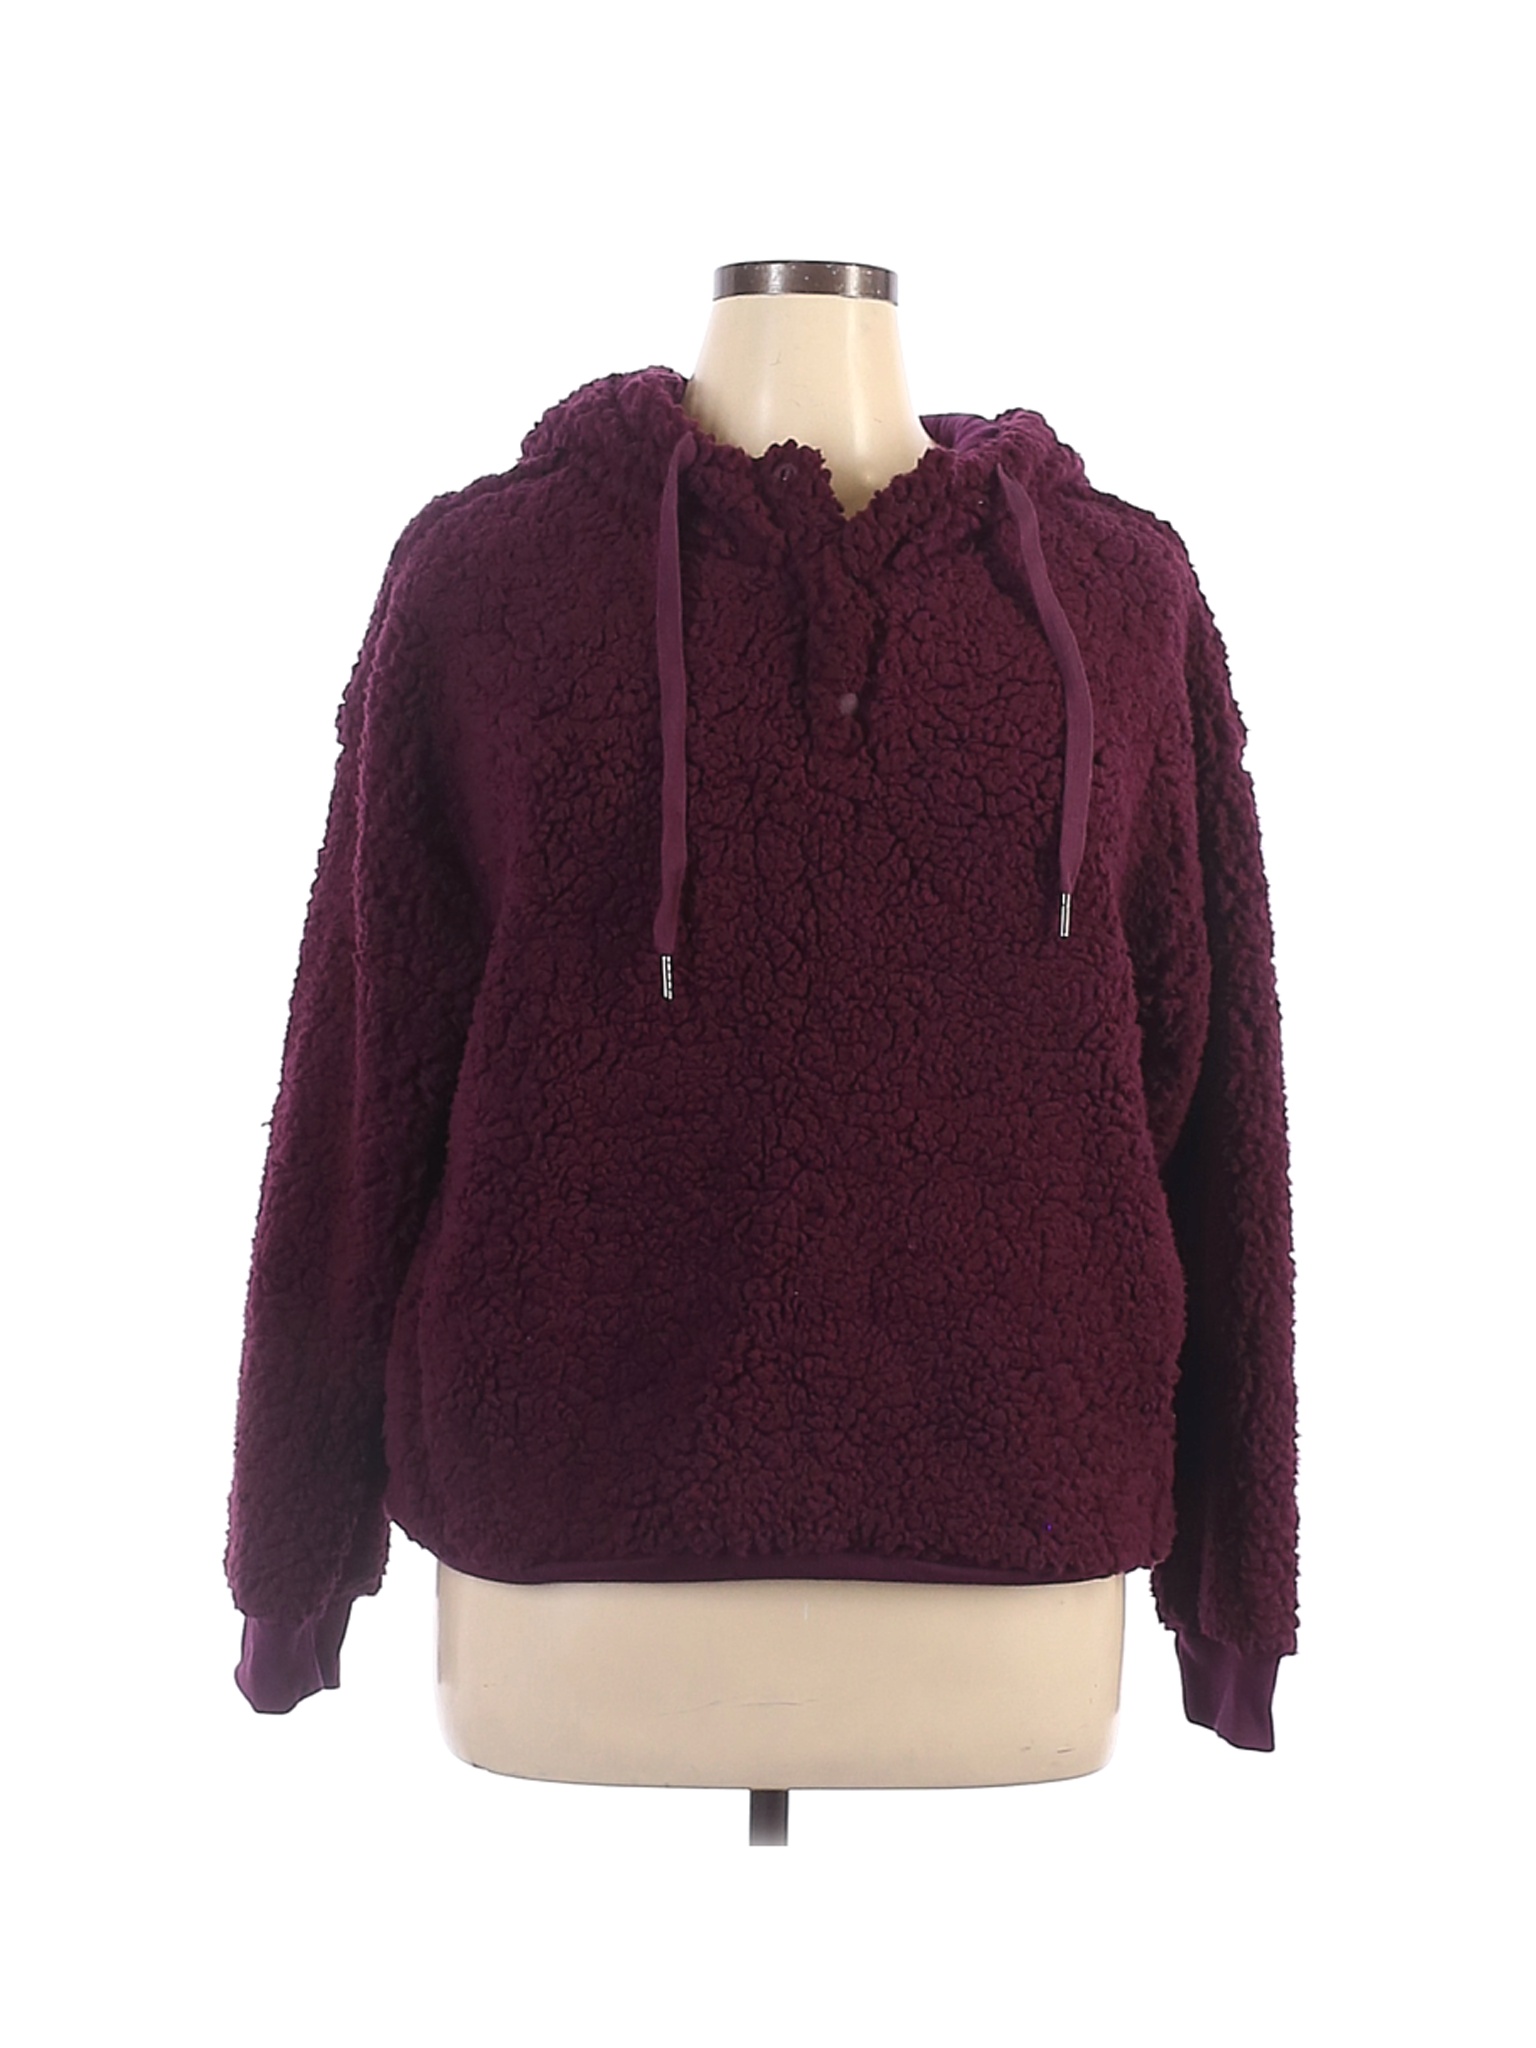 NWT Z by Zella Women Purple Pullover Hoodie XL | eBay